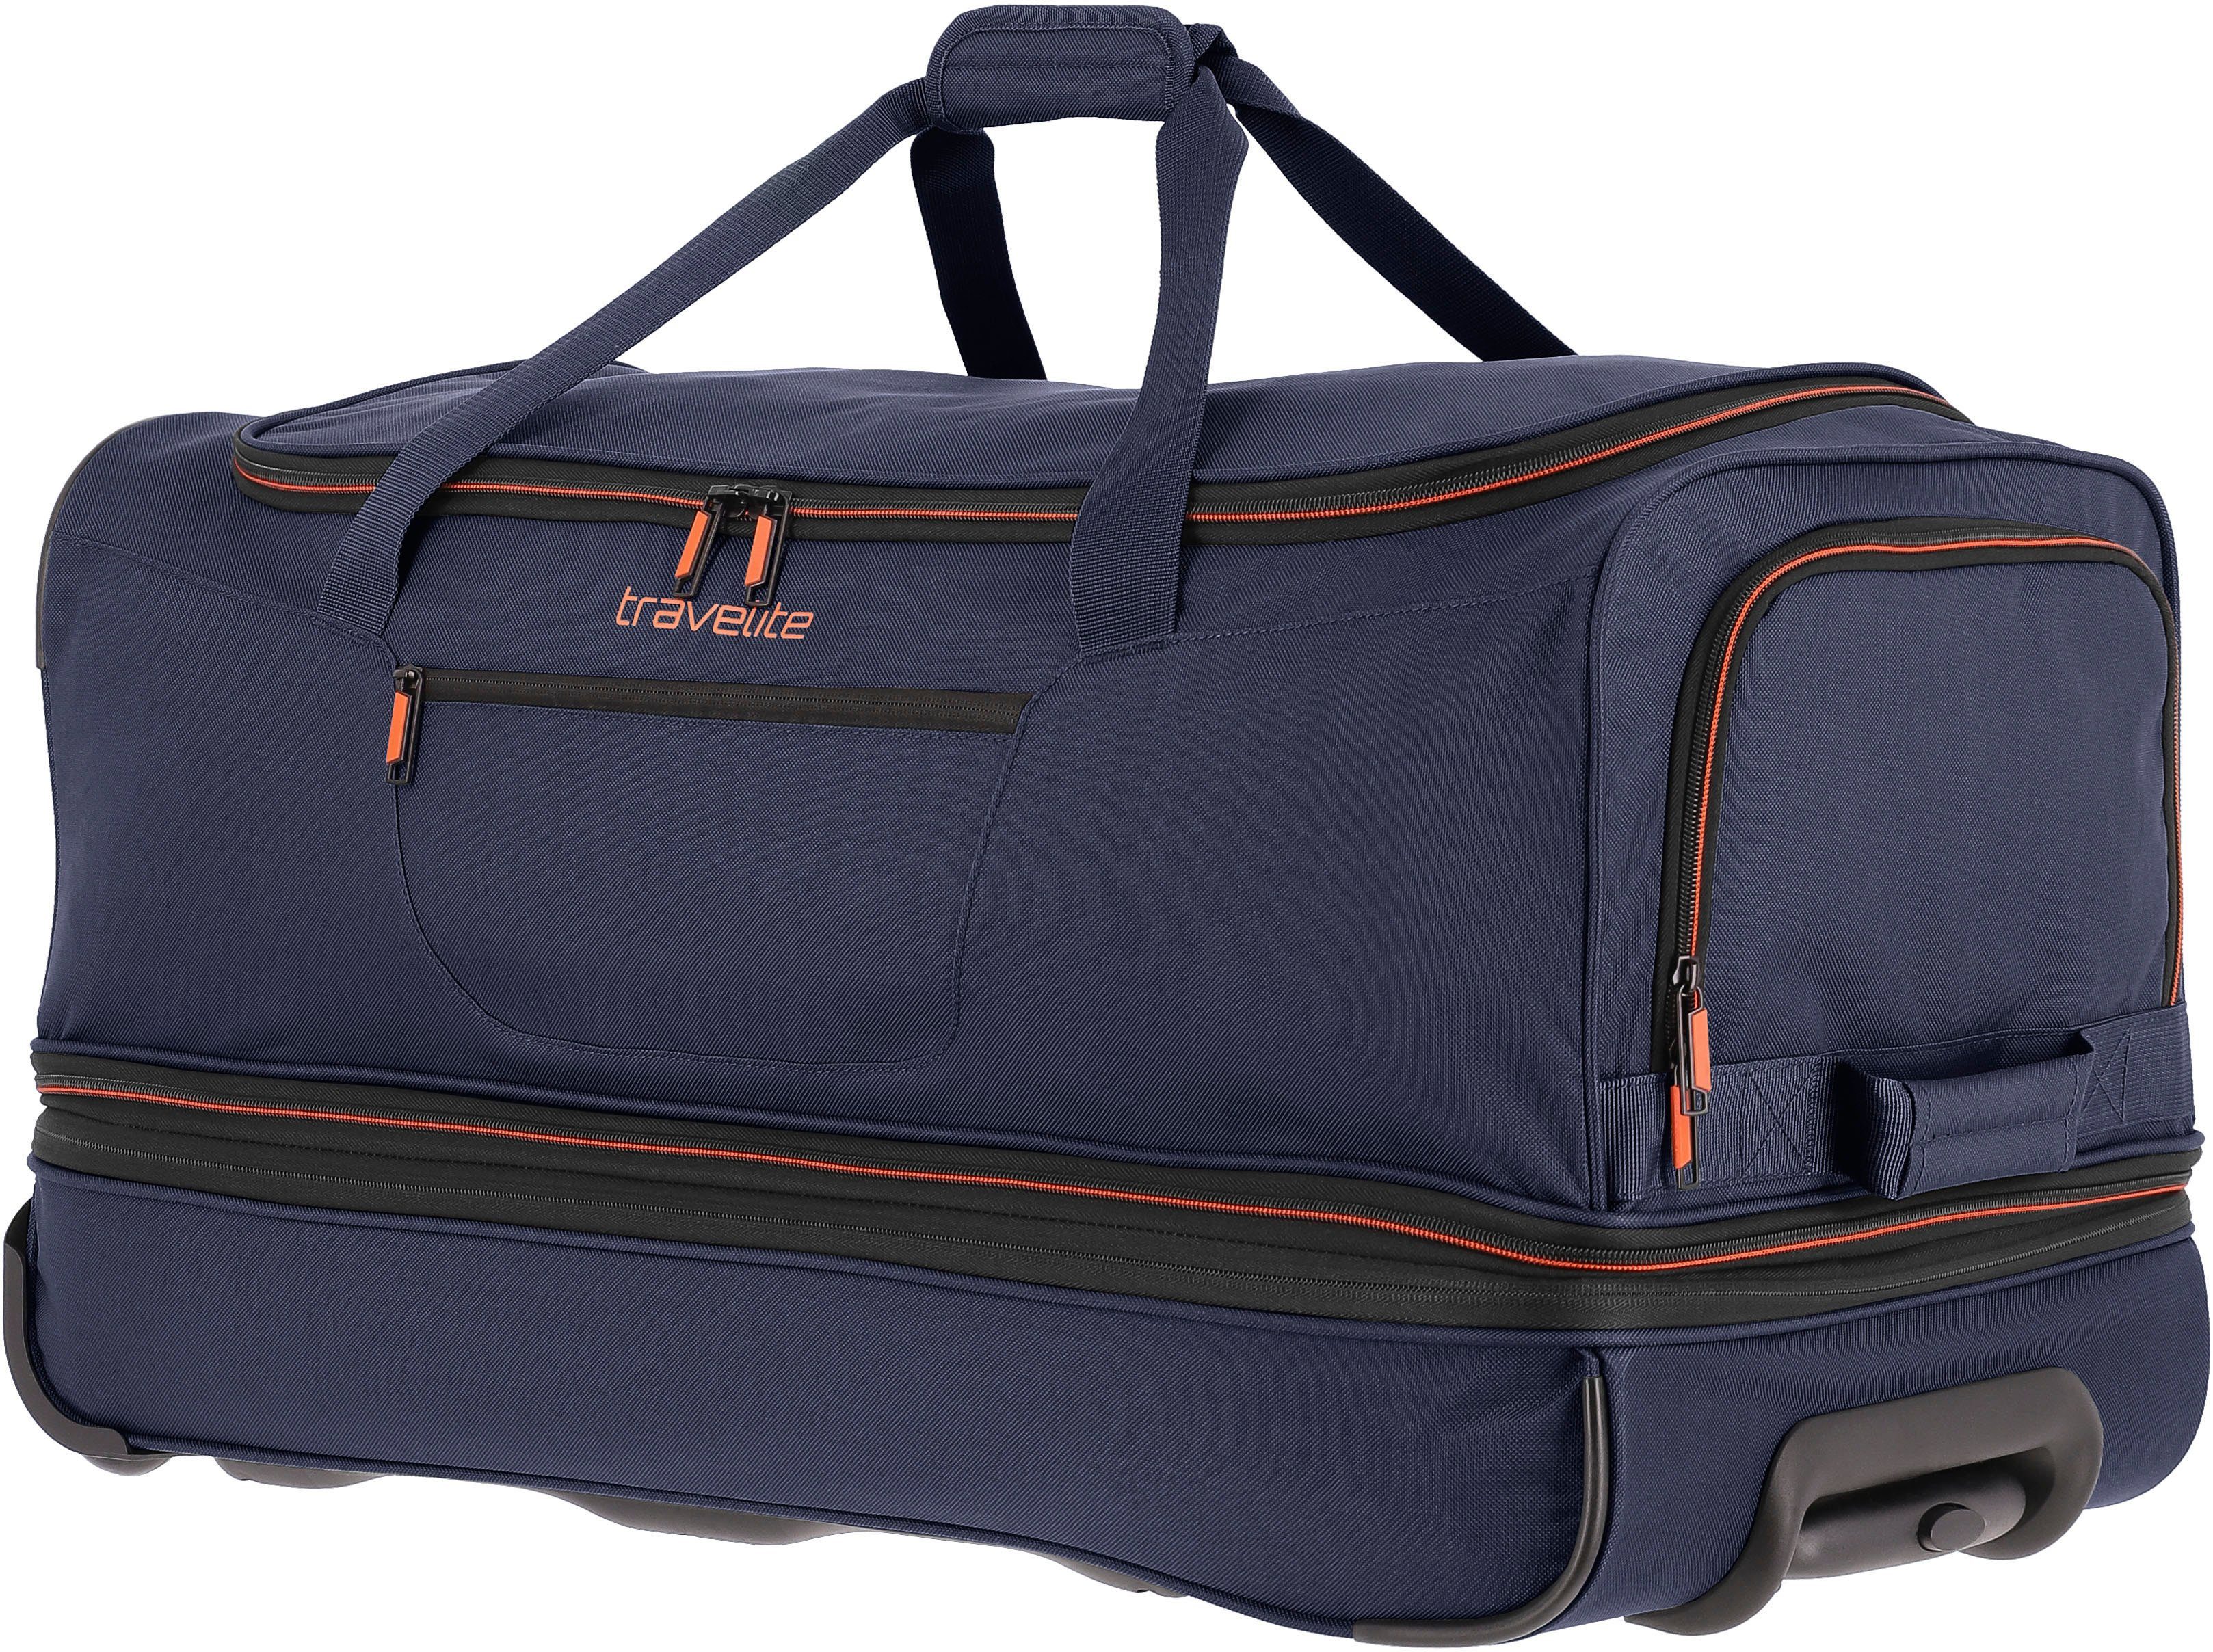 Trolleyfunktion mit Reisetasche Basics, travelite 70 marine-orange und Volumenerweiterung cm,